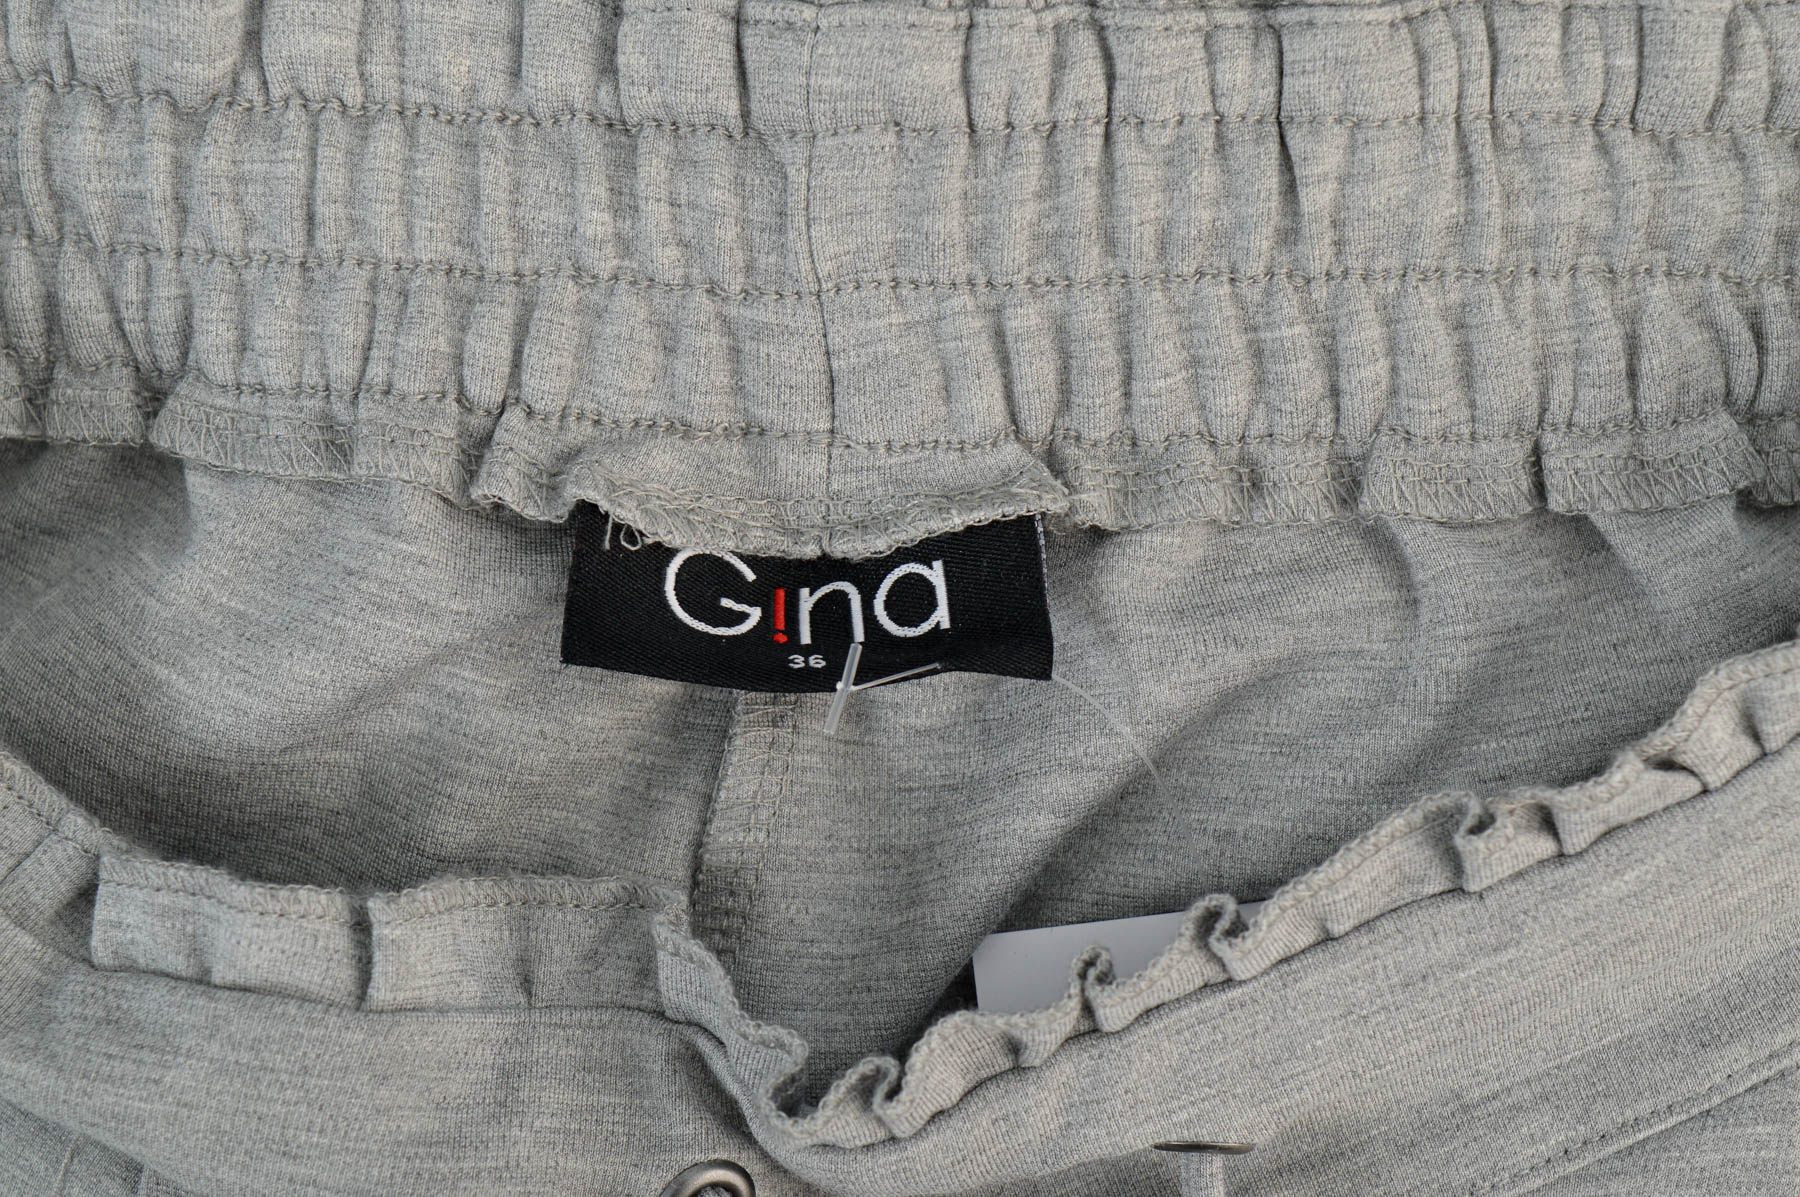 Women's trousers - G!na - 2